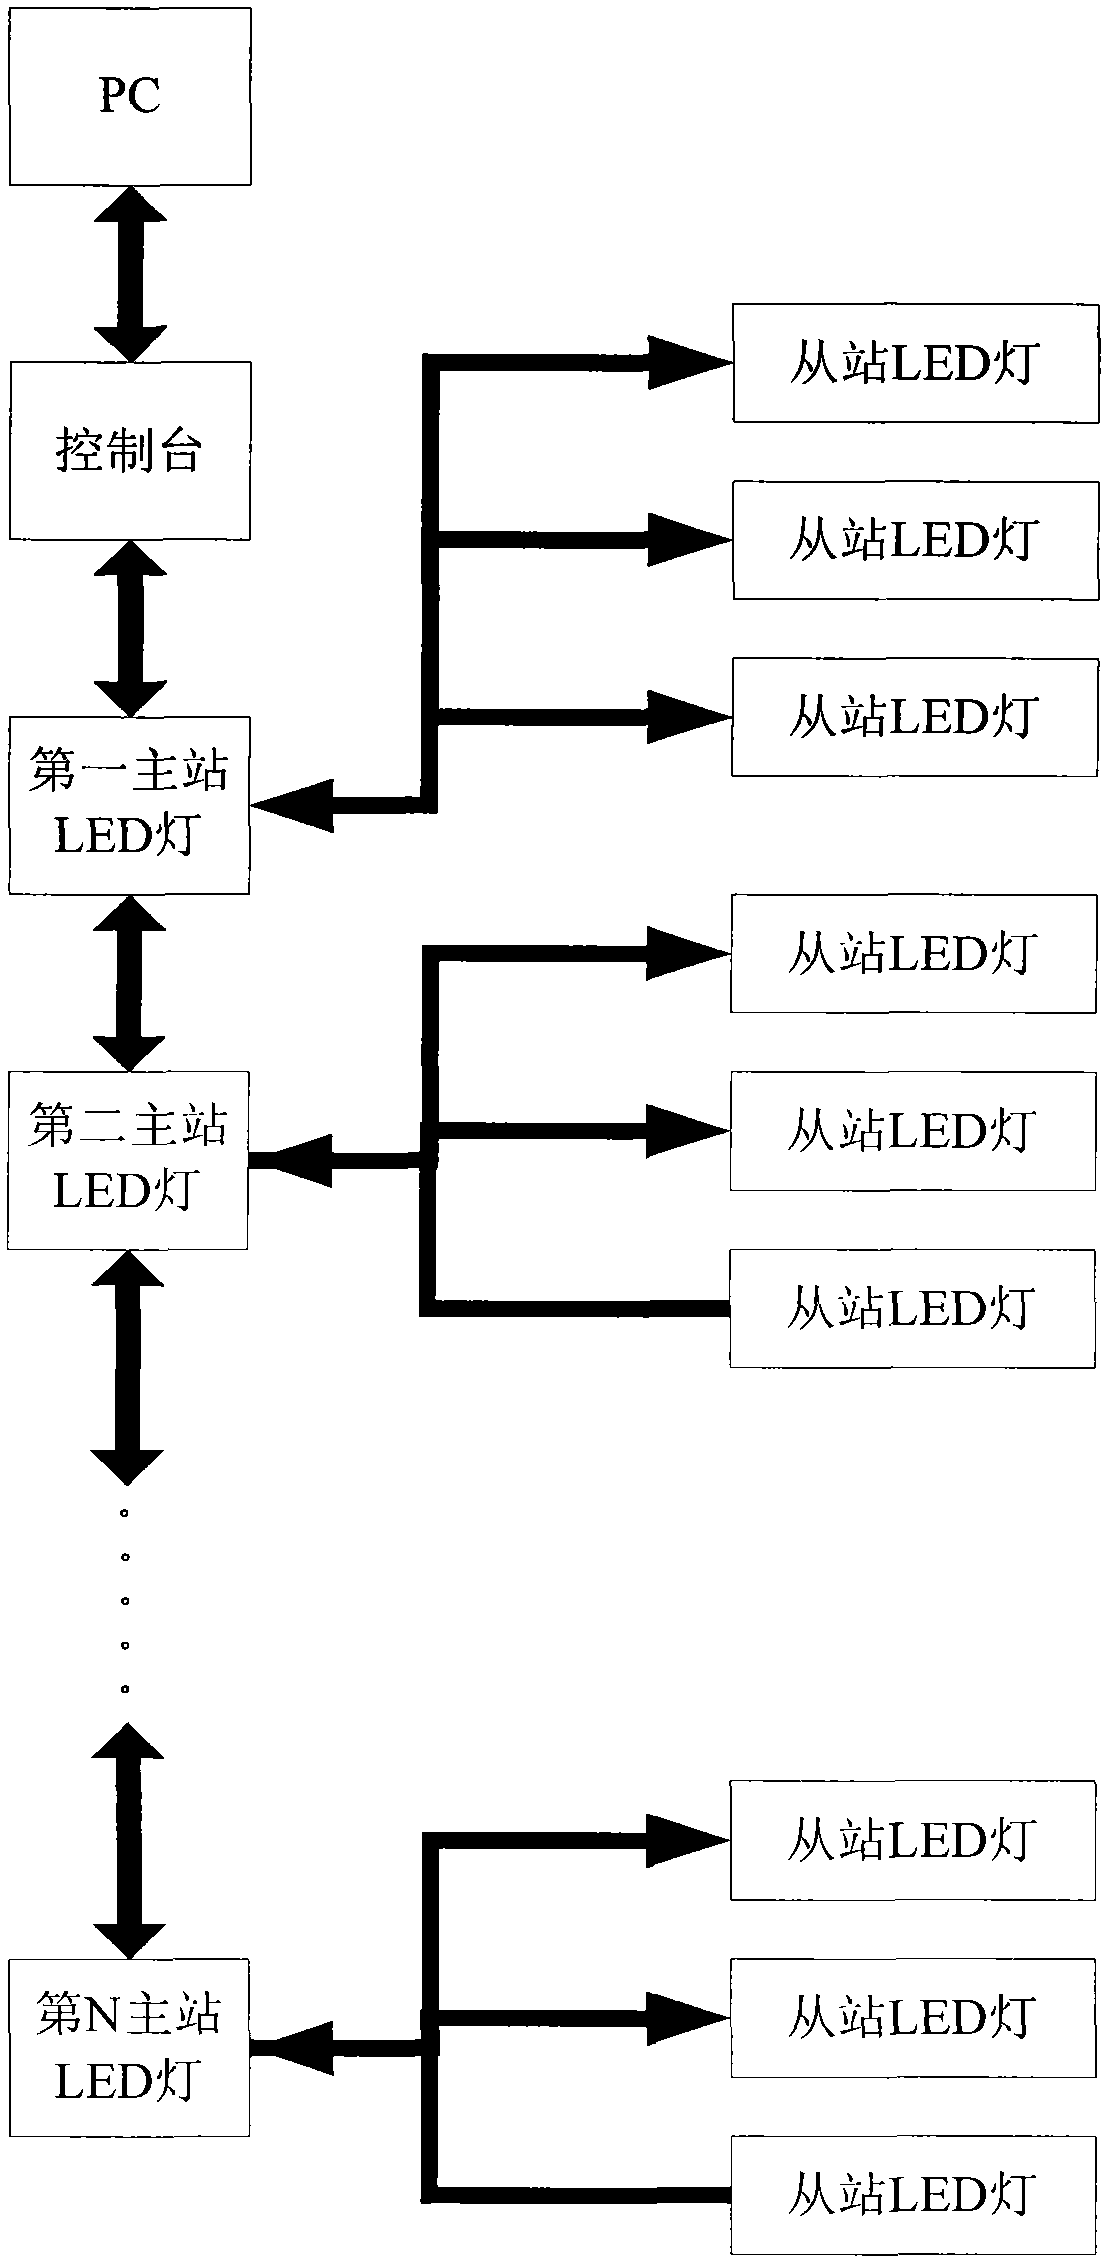 Light-emitting diode (LED) illuminating system